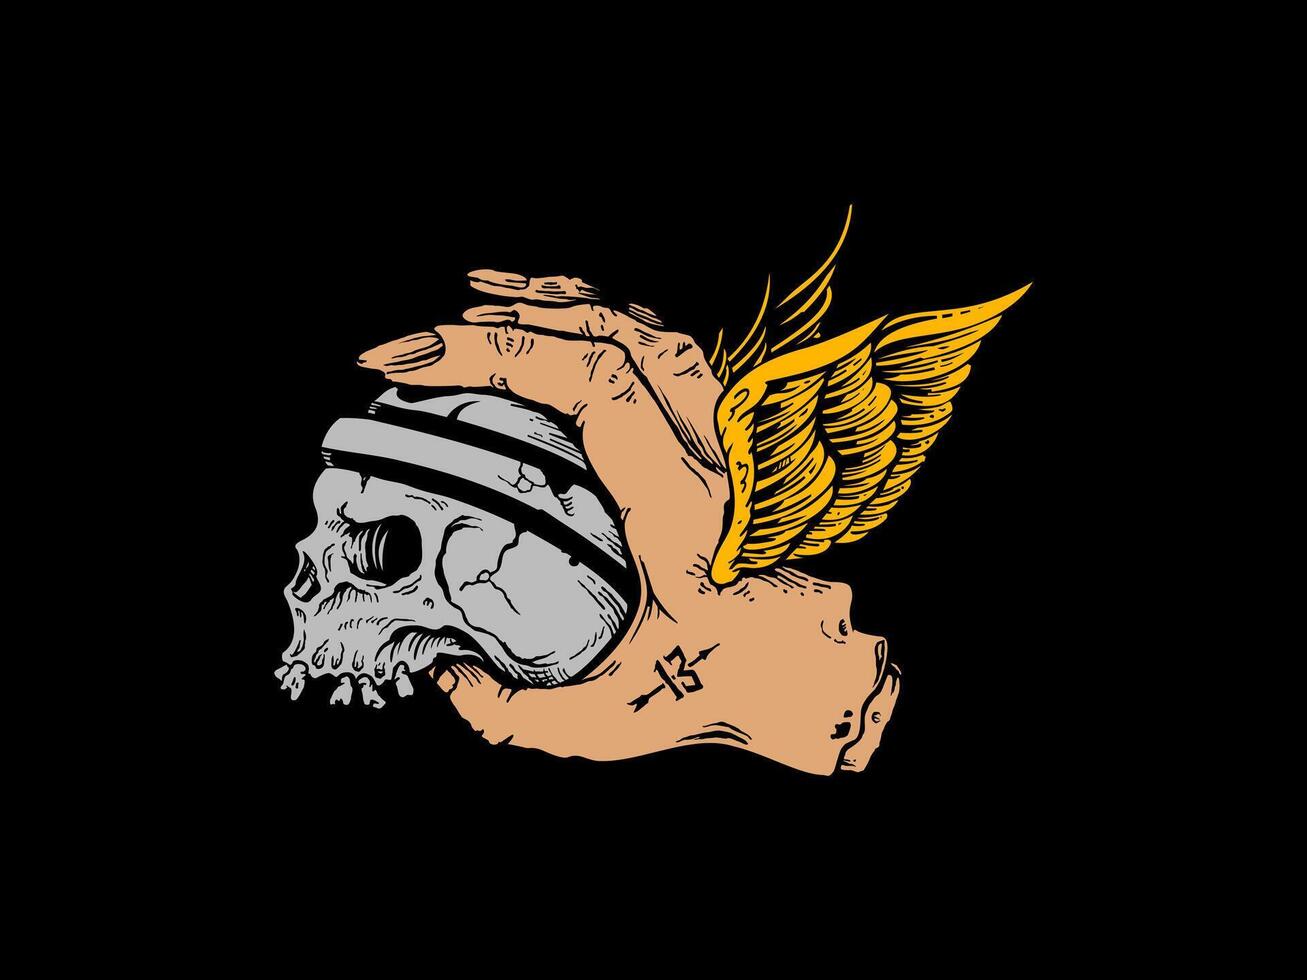 handdrawn flying hand holding skull for graphic t-shirt artwork vector